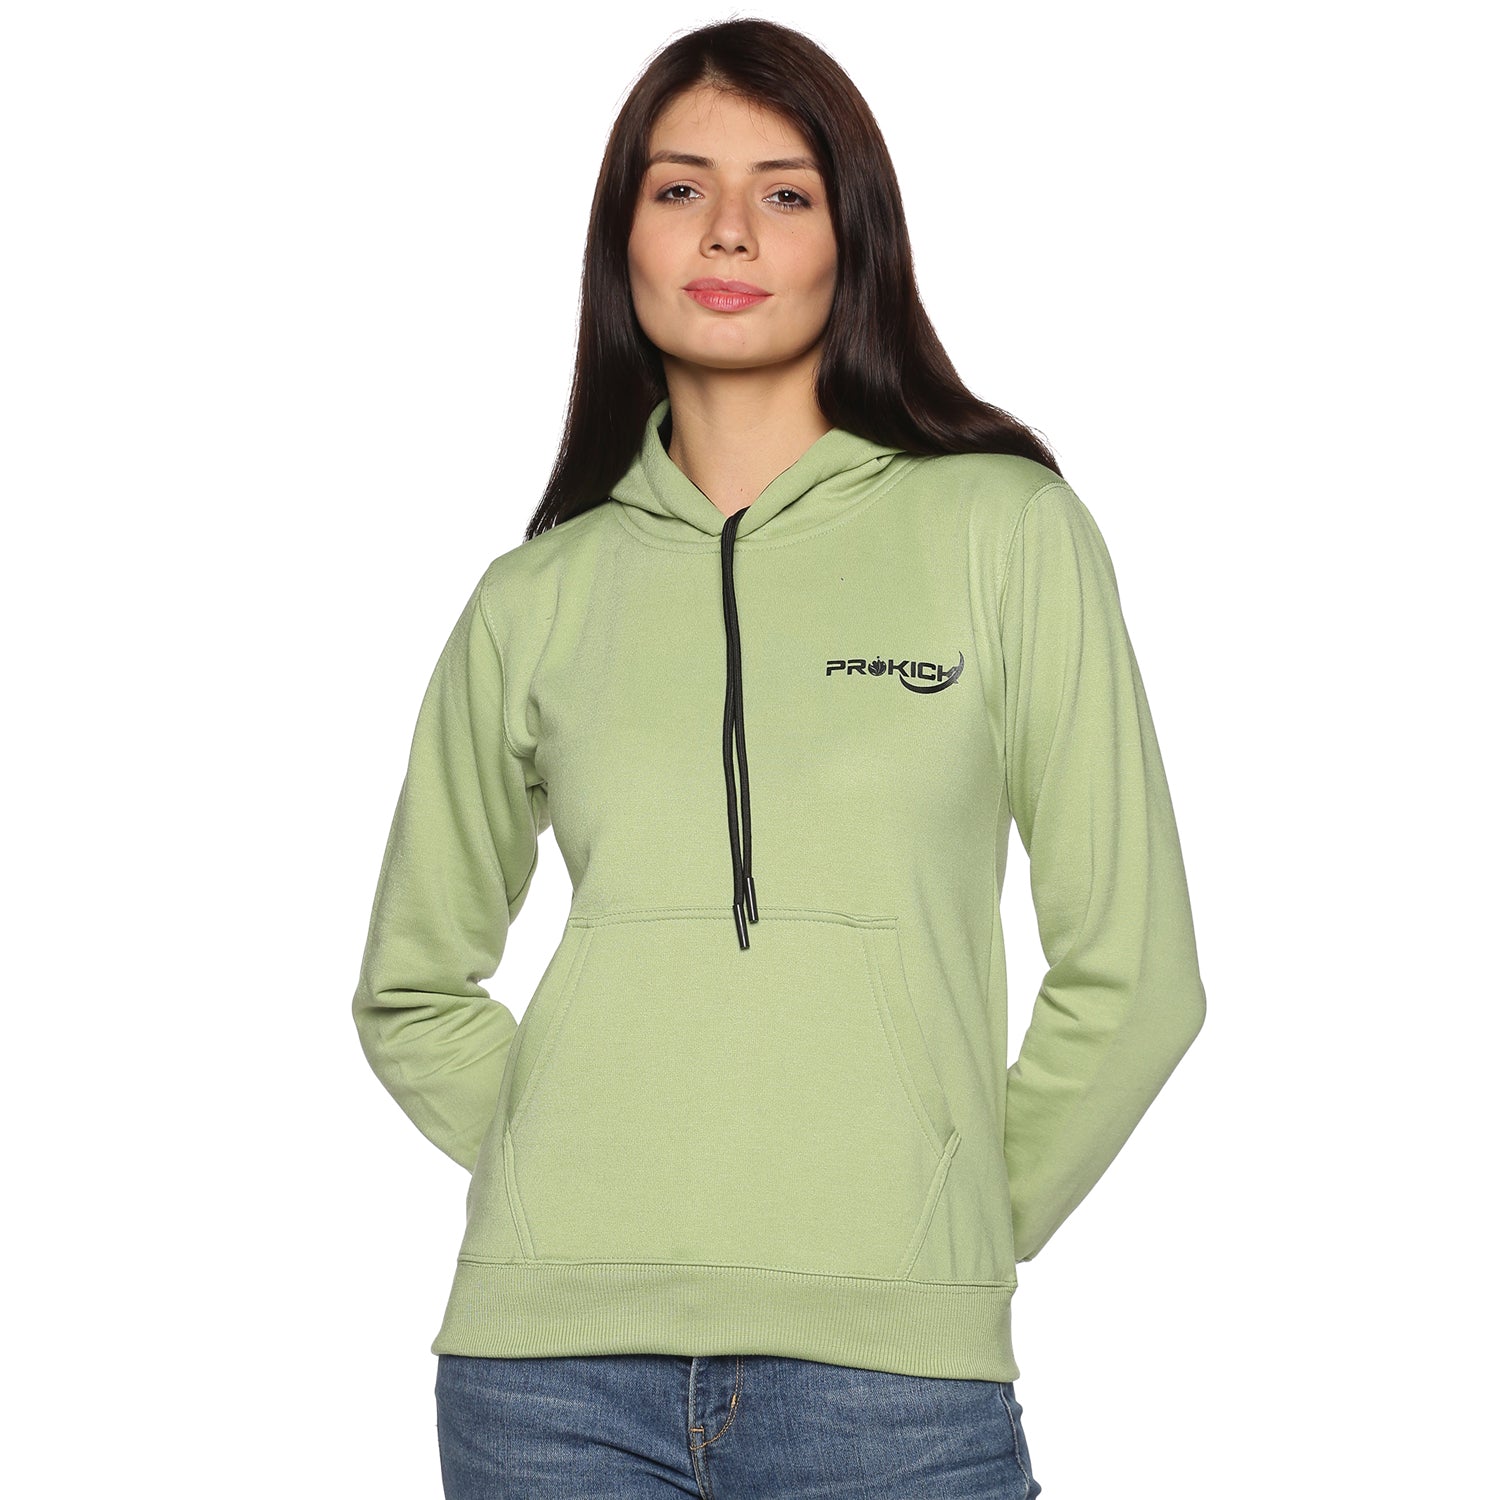 Prokick Sports Women Hooded Sweat Shirt , Green - Best Price online Prokicksports.com